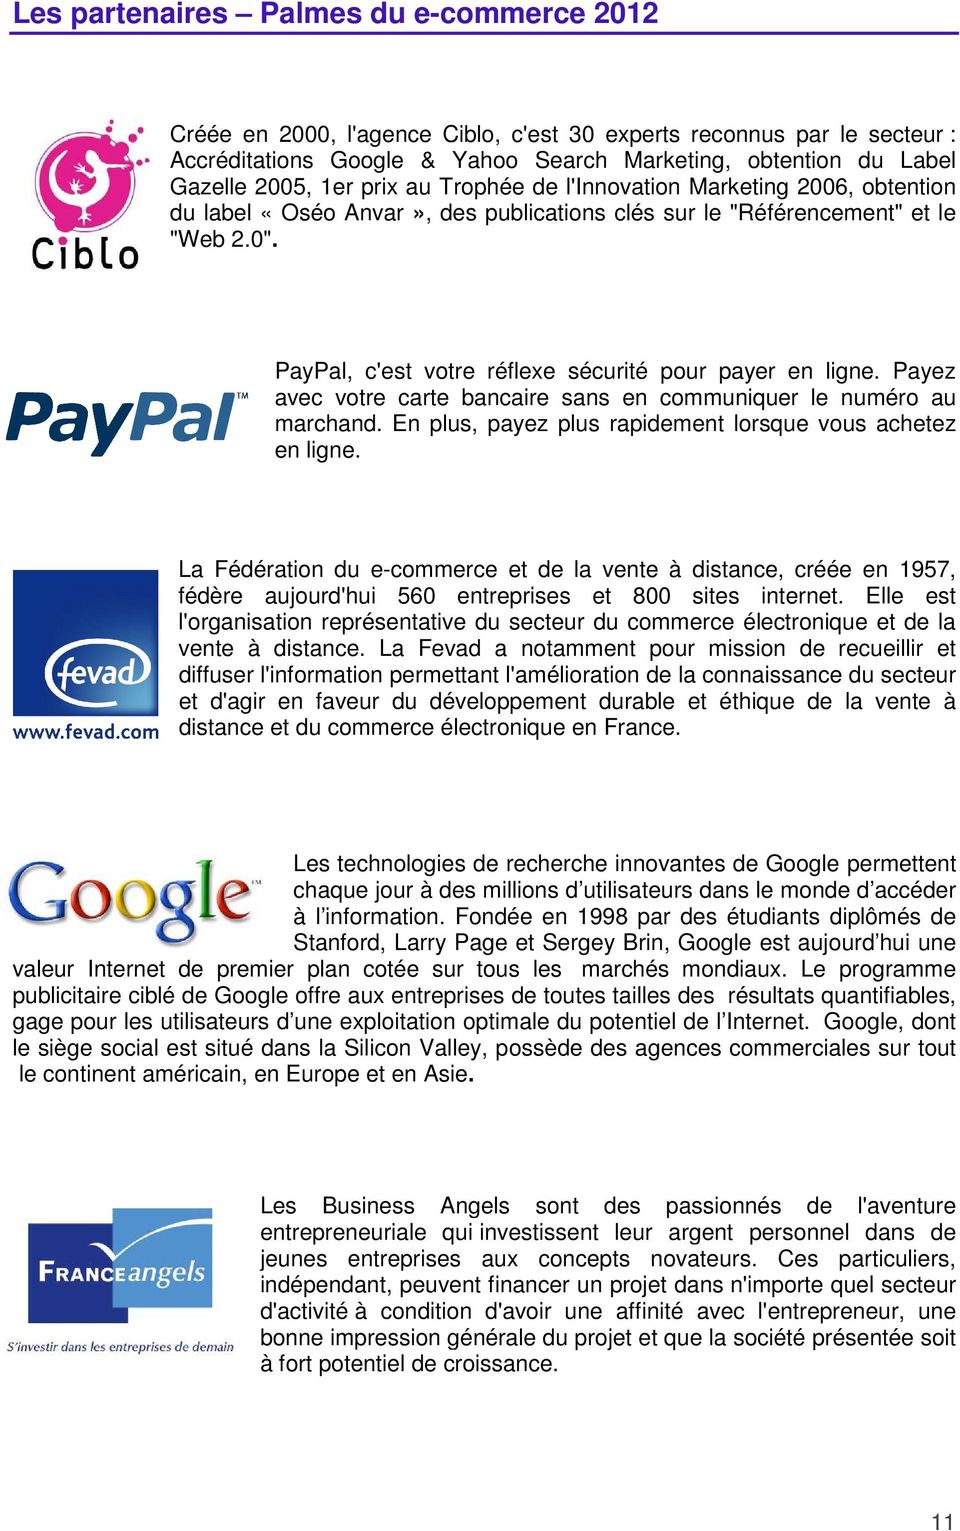 PayPal, c'est votre réflexe sécurité pour payer en ligne. Payez avec votre carte bancaire sans en communiquer le numéro au marchand. En plus, payez plus rapidement lorsque vous achetez en ligne.